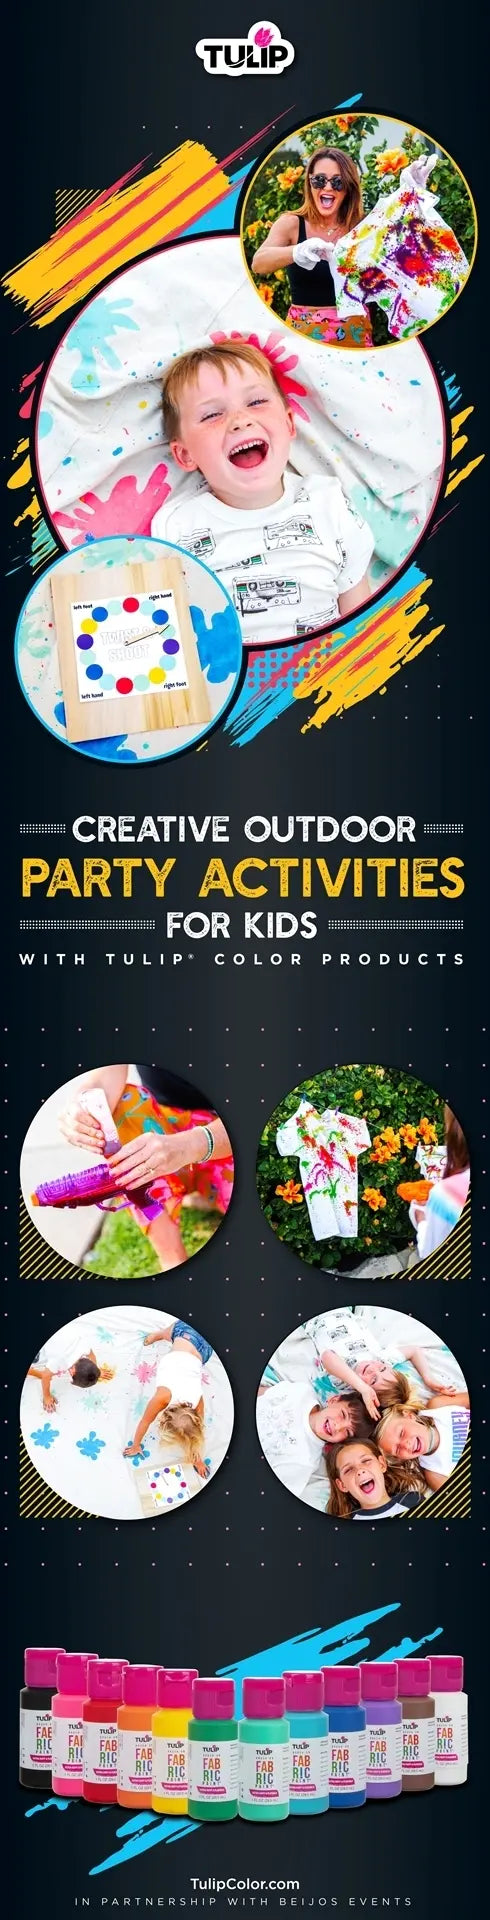 Creative Outdoor Activities for Kids